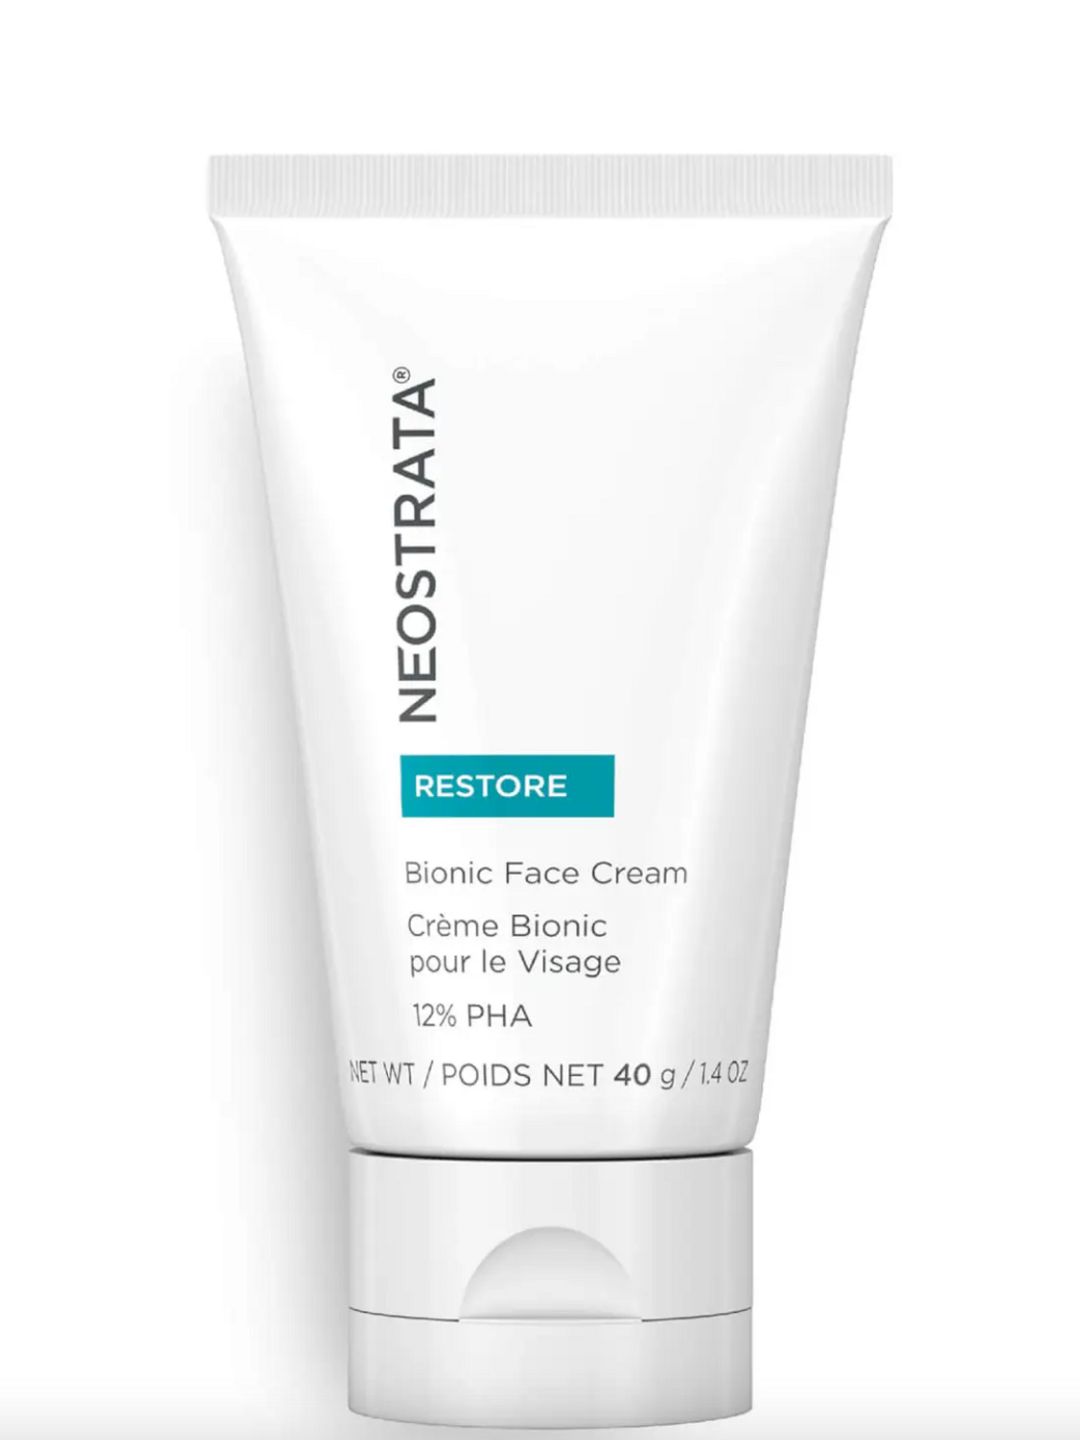 Restore Bionic Face Cream - NeoStrata 